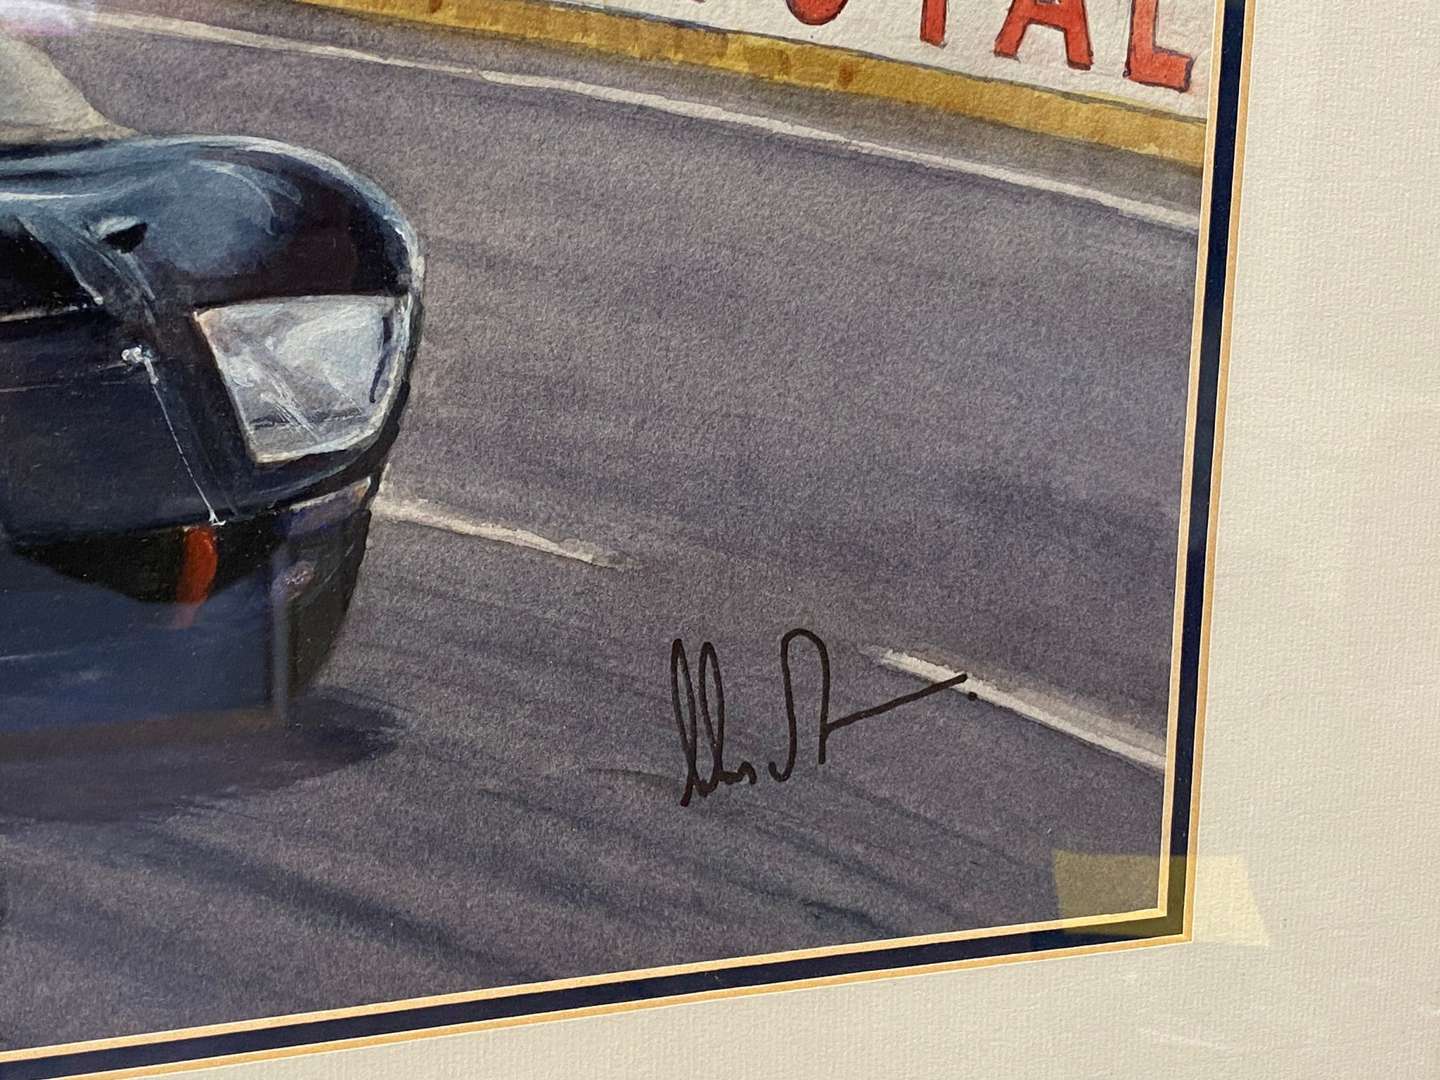 <p>DENNIS TAYLOR (NZ), “Chris Amon, Ford GT40, 1966 Le Mans 24hr”, watercolour</p>